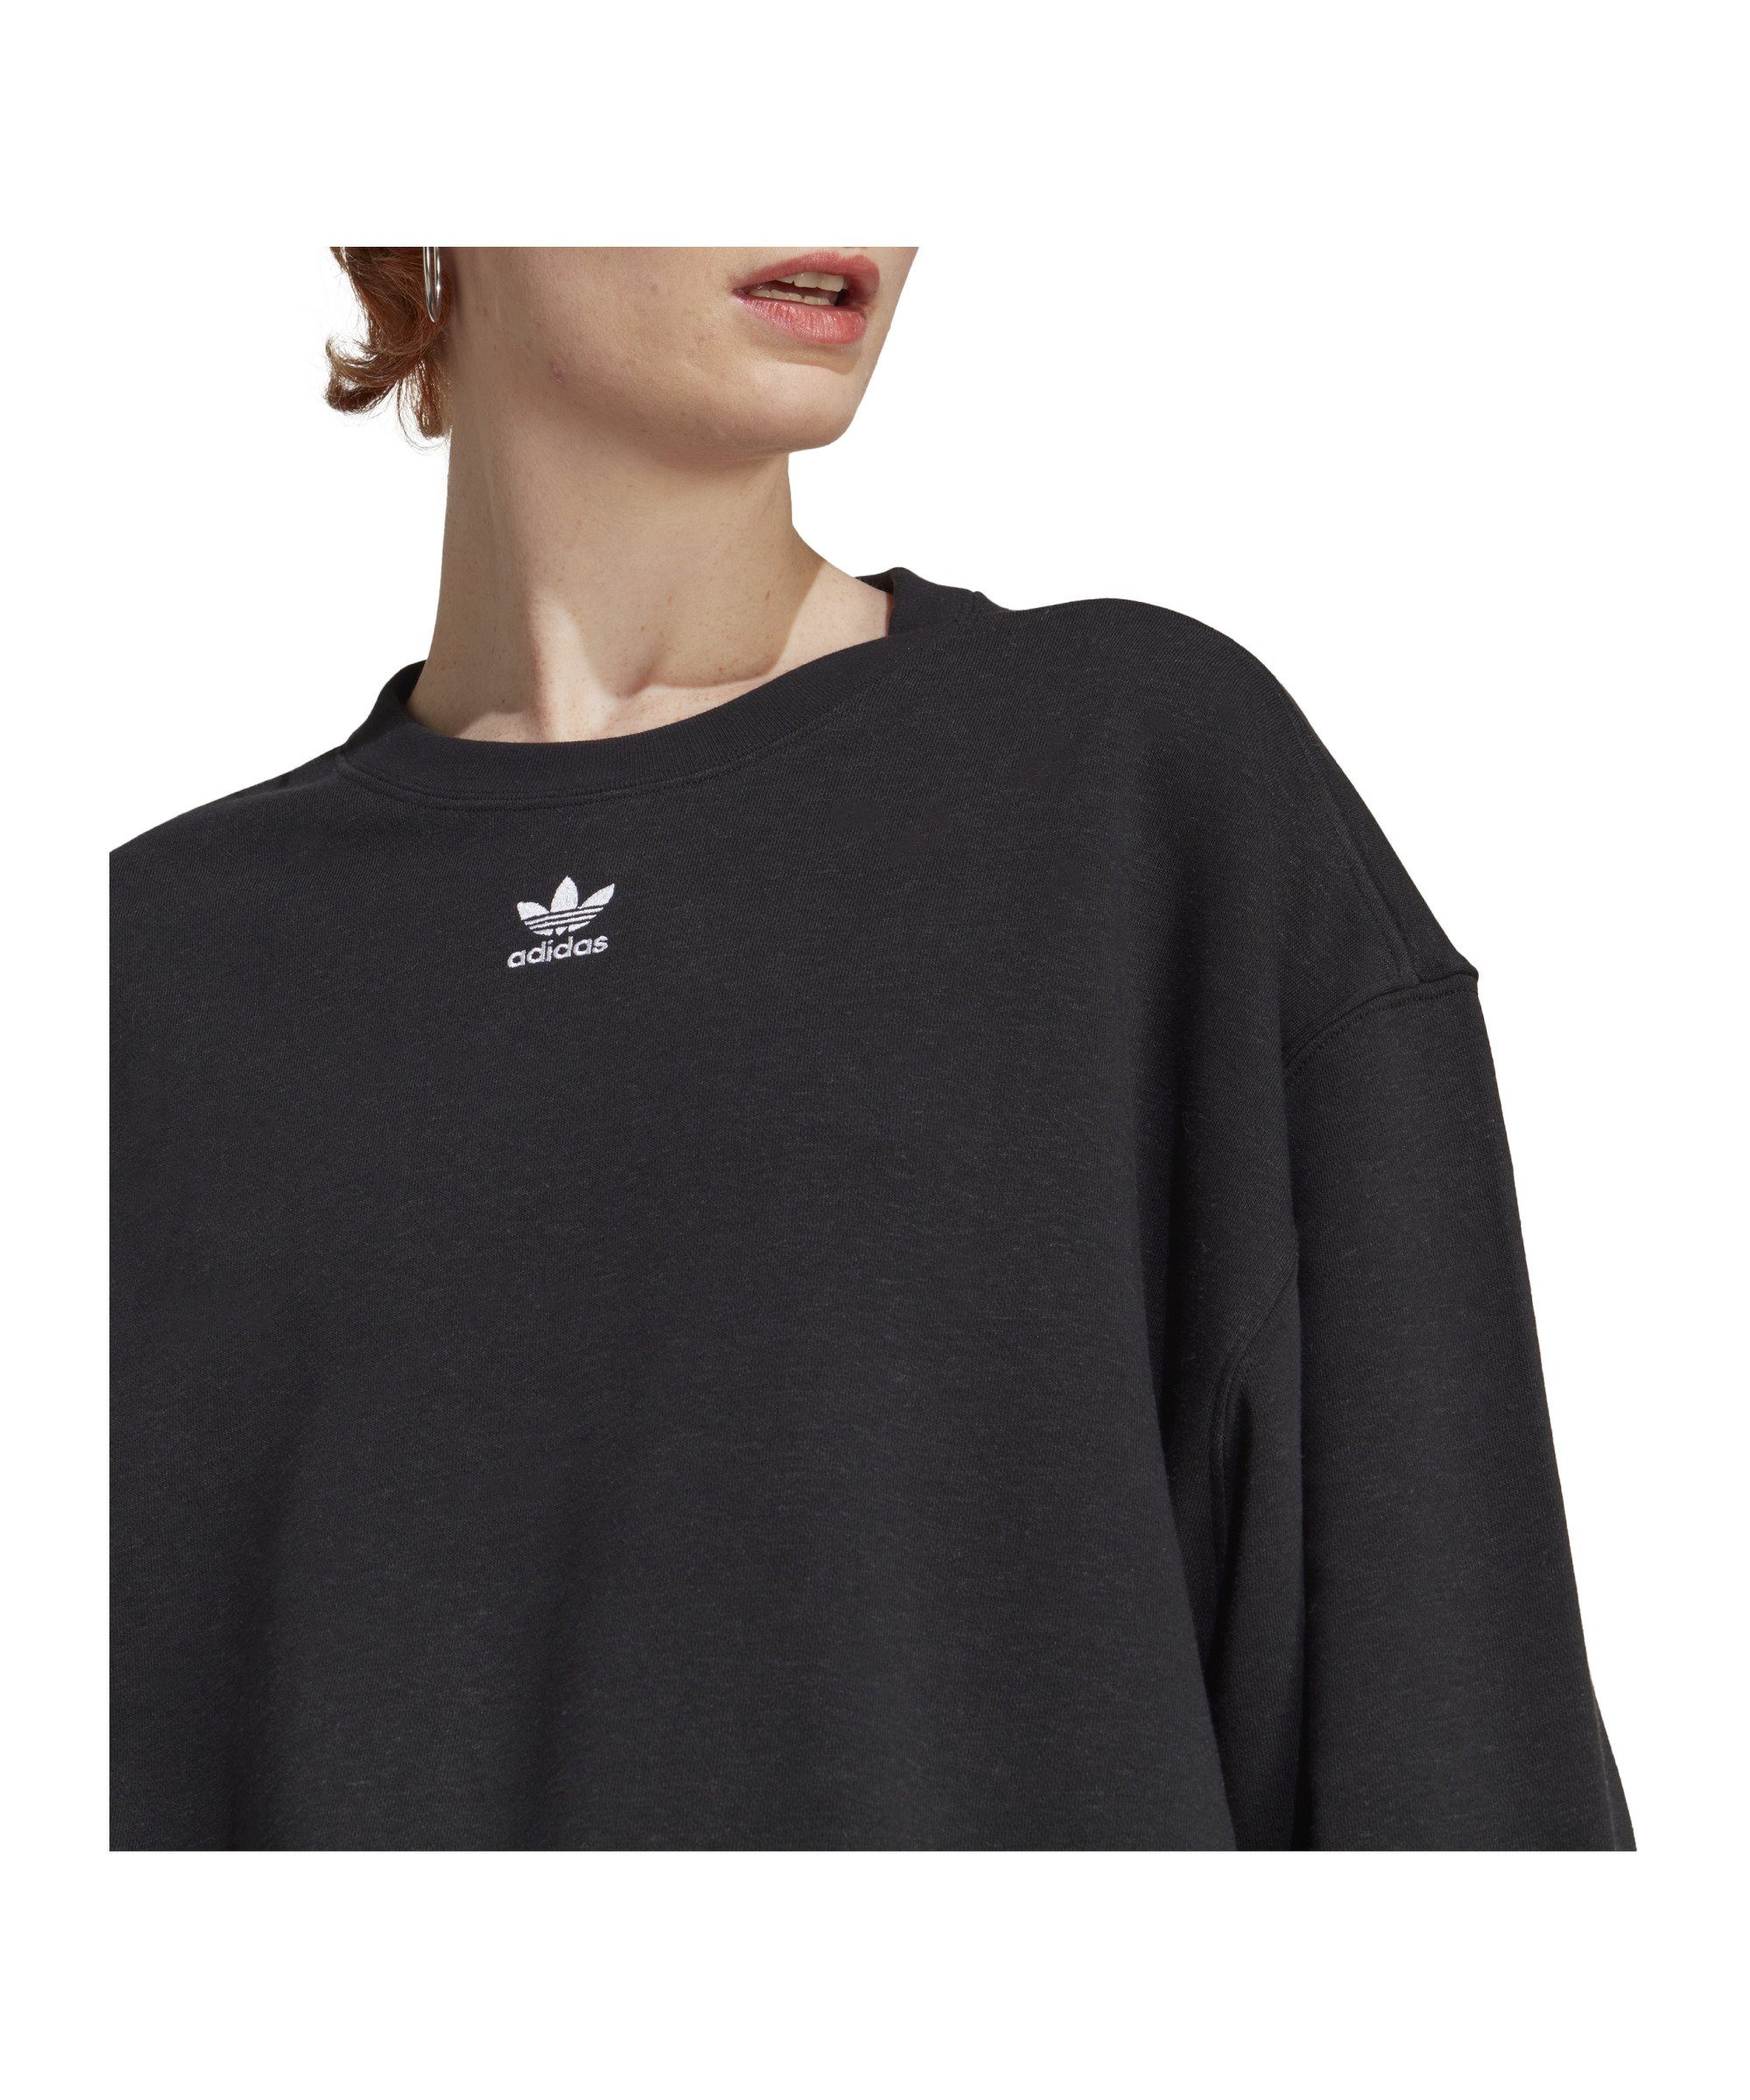 adidas Originals Sweater Ess. Sweatshirt schwarz Damen